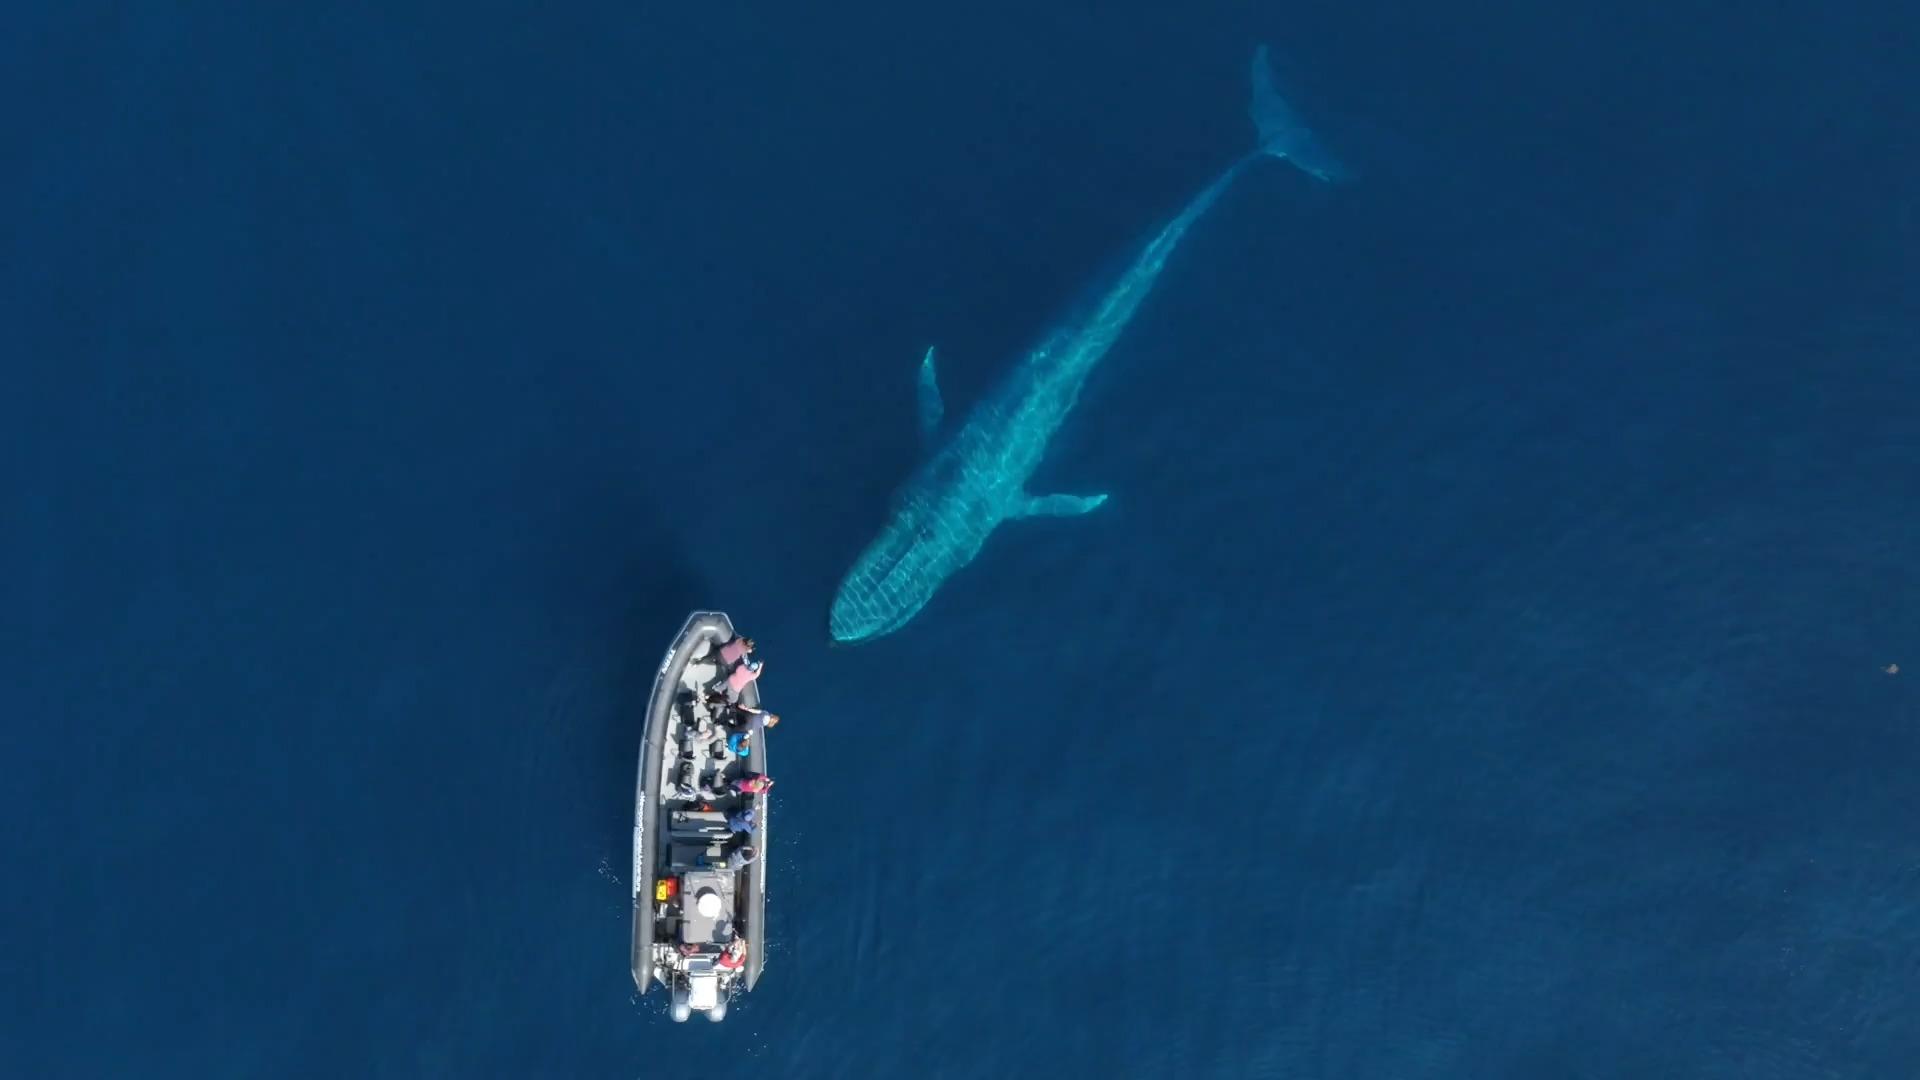 Magischer Moment im Video: Blauwal schwimmt unter Boot durch Spektakuläre Drohnen-Aufnahmen